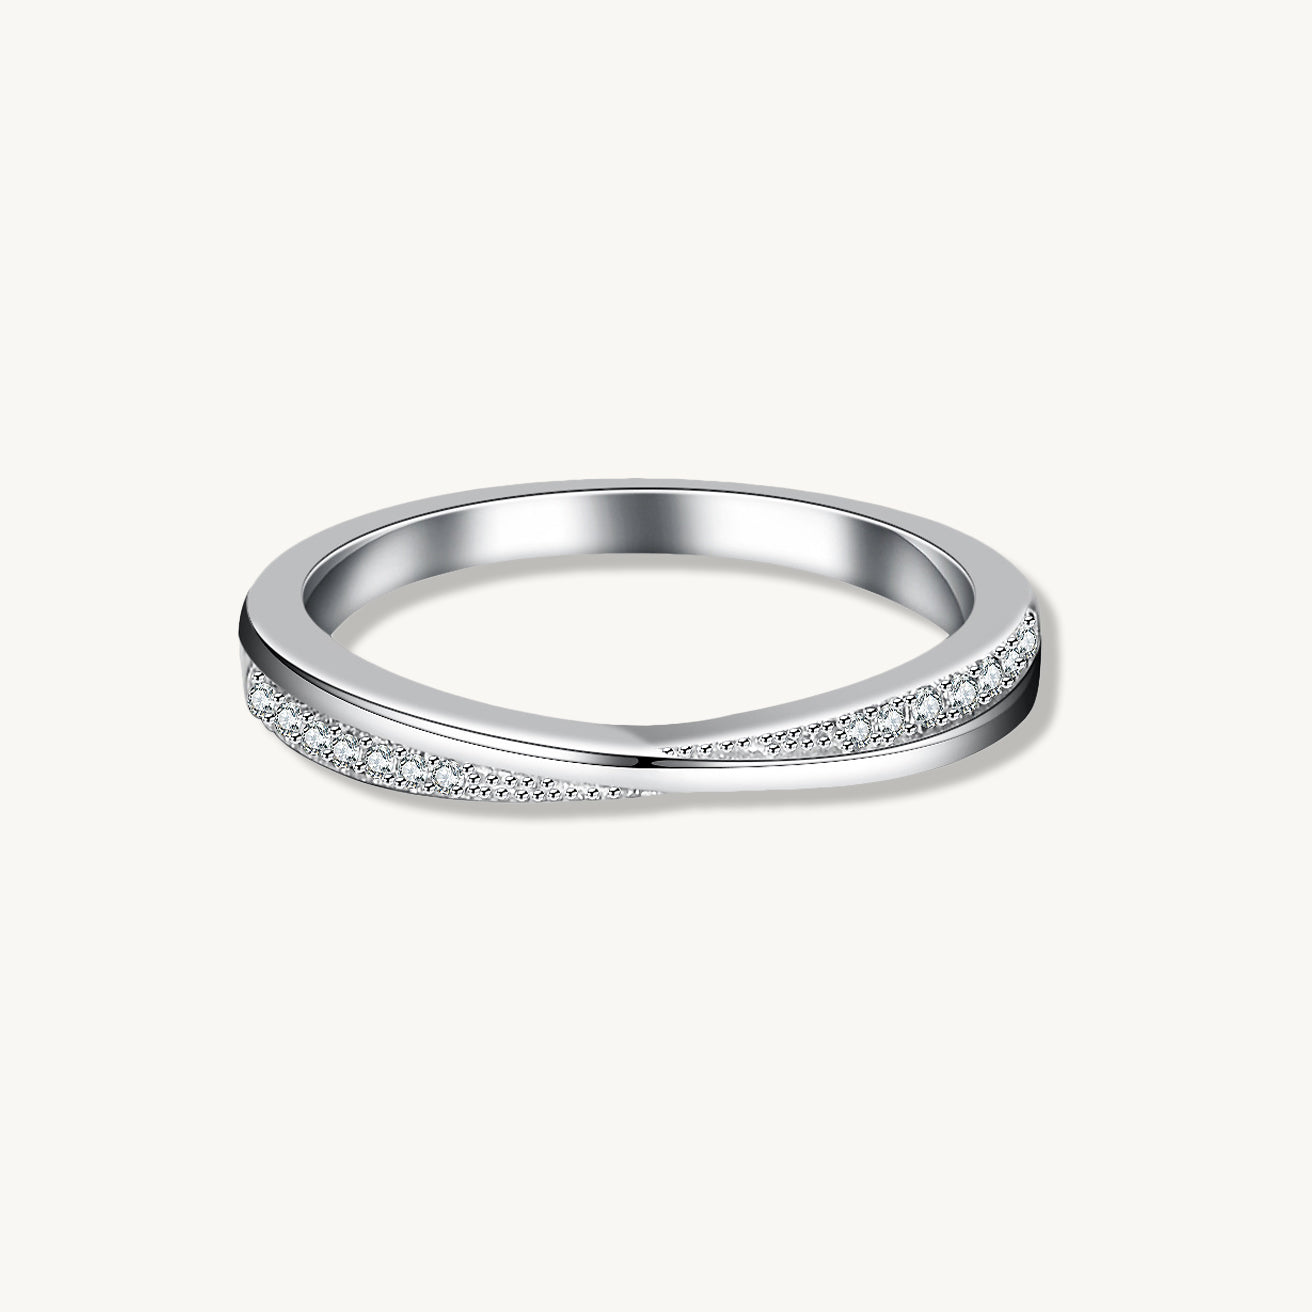 The Cross Moissanite Diamond Engagement Ring